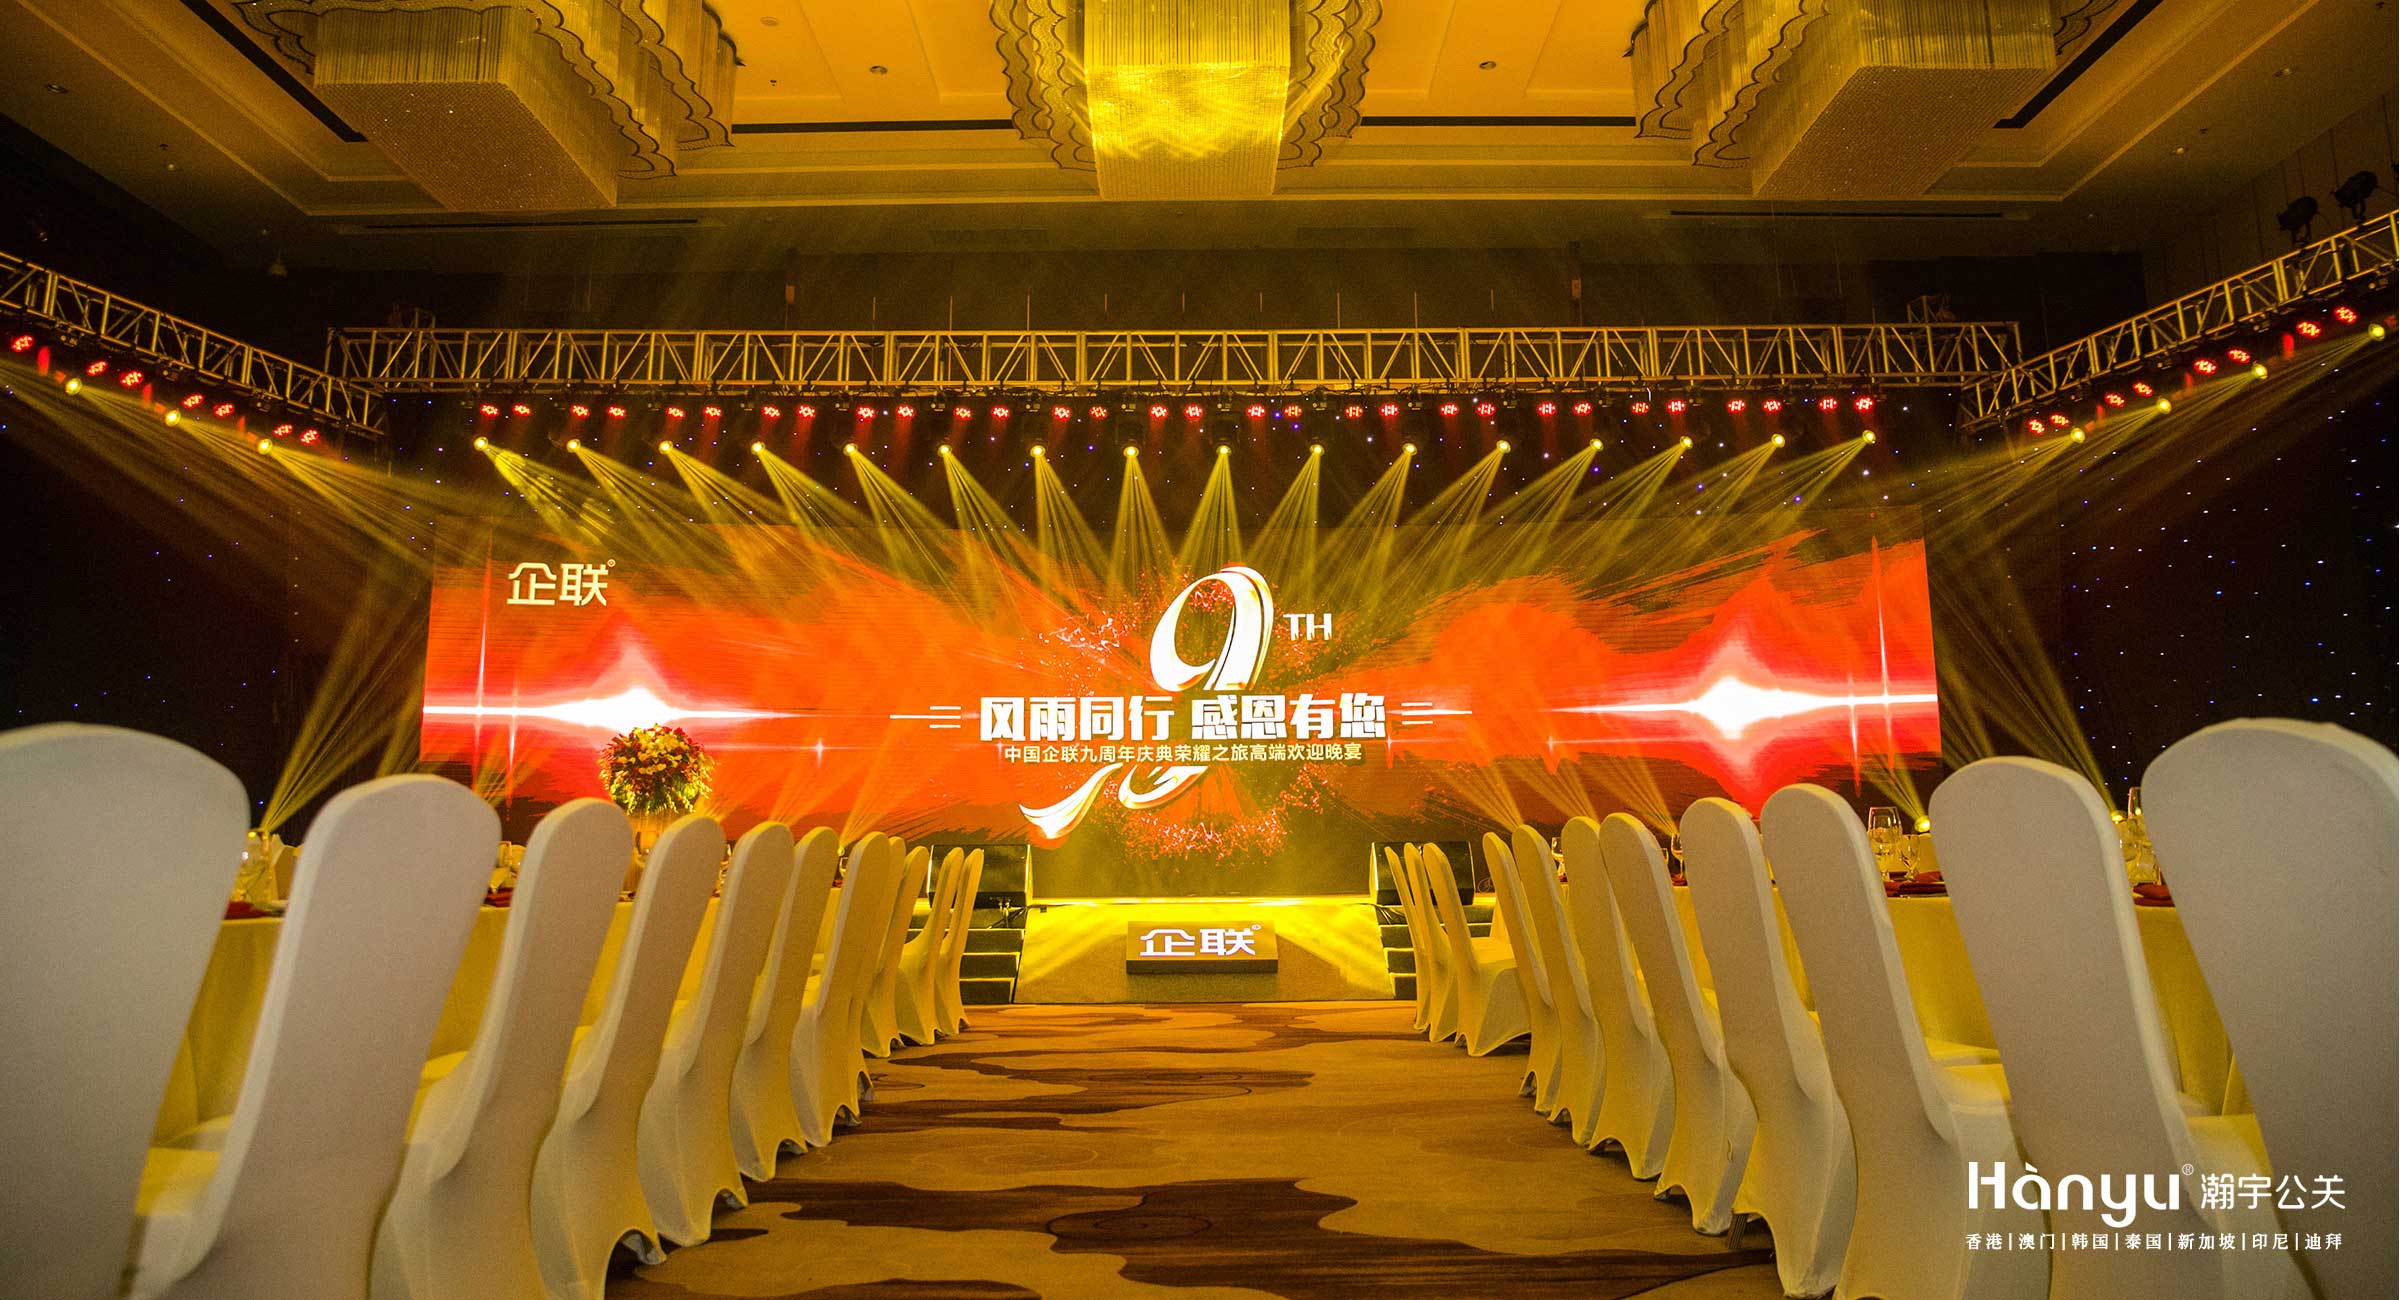 中国企联九周年庆典荣耀之旅高端欢迎晚宴